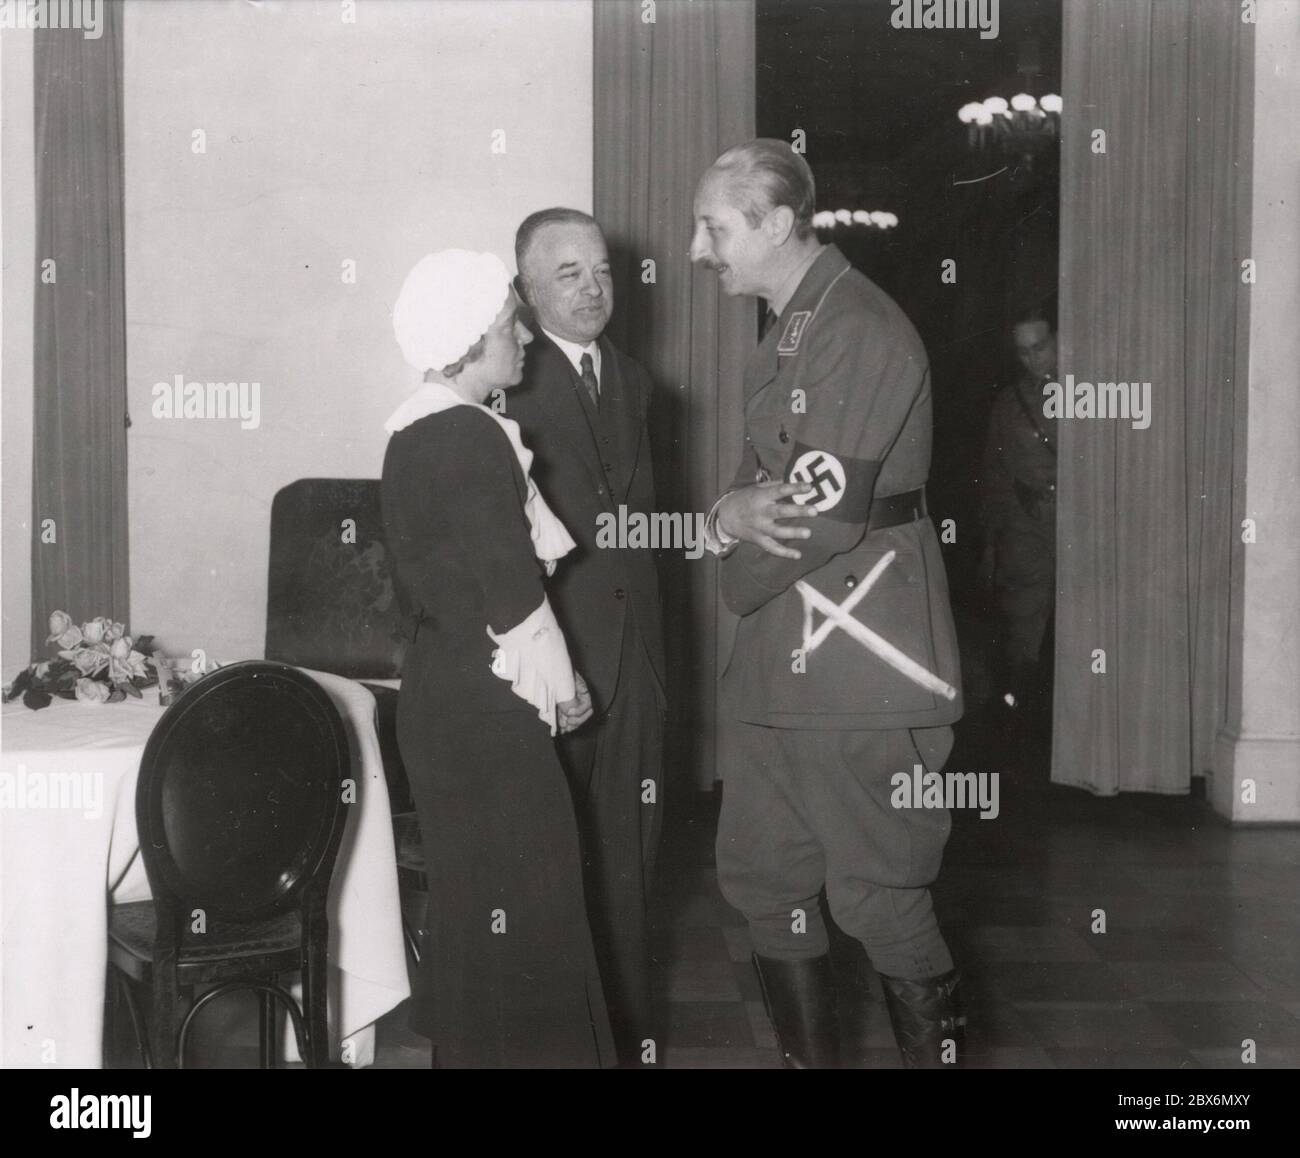 Prinz August Wilh. Aus Preußen. Heinrich Hoffmann fotografiert 1933 Adolf Hitlers offizieller Fotograf und Nazi-Politiker und Verleger, der Mitglied des intime Kreises Hitlers war. Stockfoto